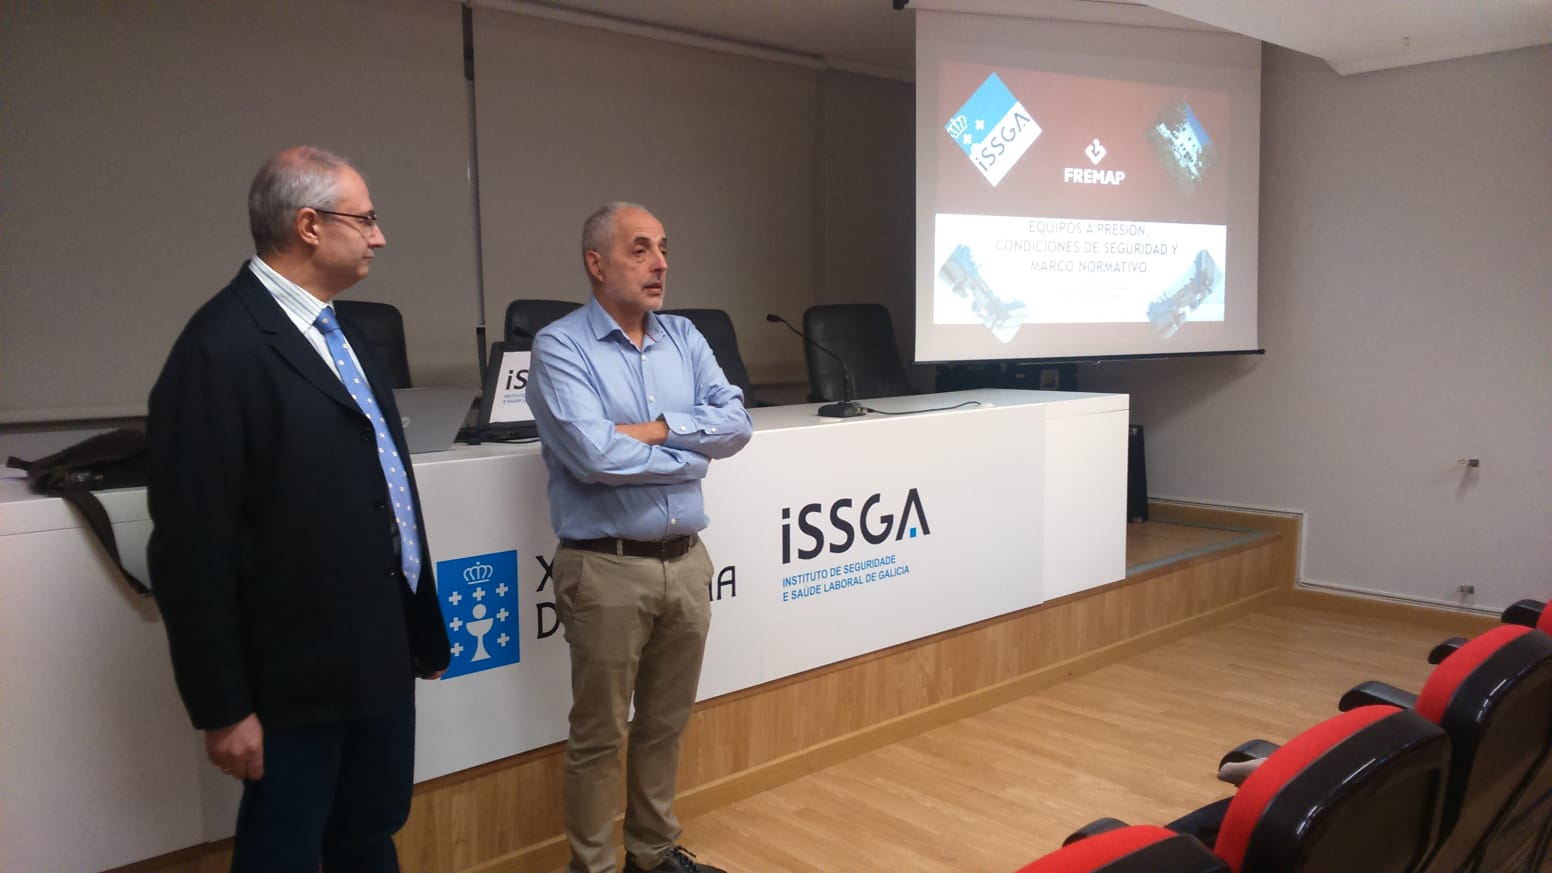 O centro ISSGA de Ourense acolleu unha xornada técnica sobre equipos a presiónEl centro ISSGA de Ourense acogió una jornada técnica sobre equipos a presión